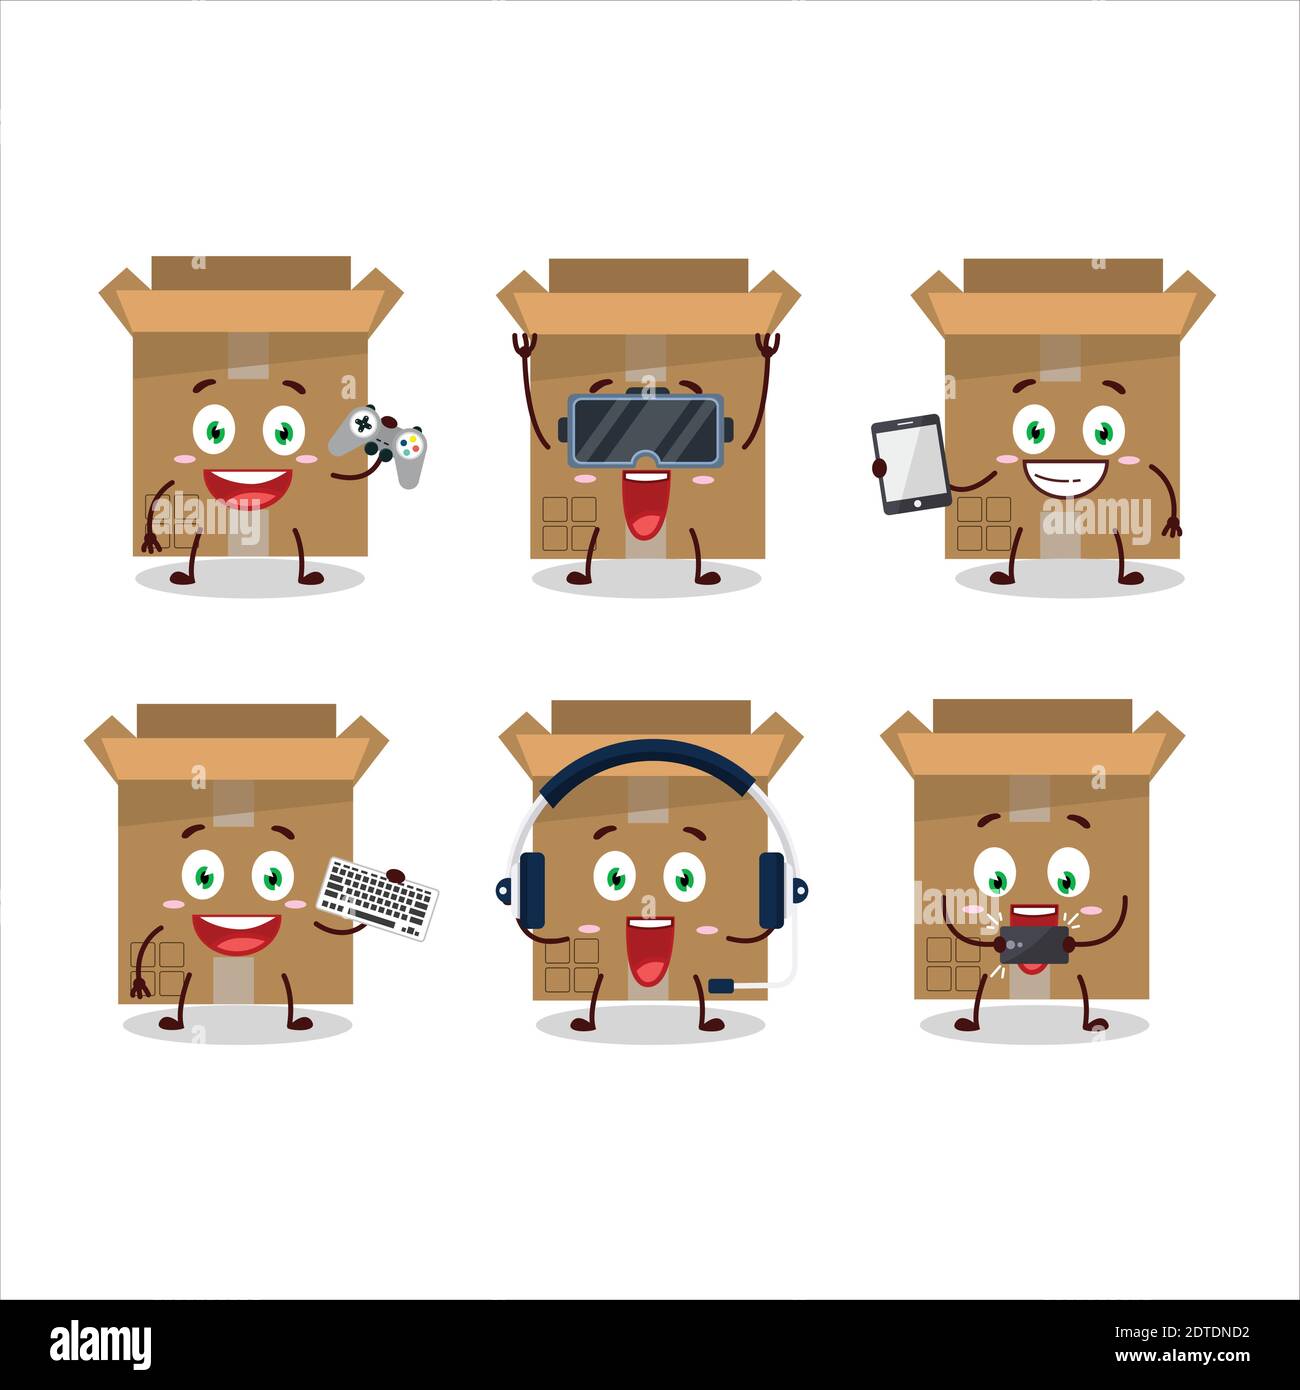 Carton boîte personnage de dessin animé jouent à des jeux avec divers émoticônes mignons. Illustration vectorielle Illustration de Vecteur